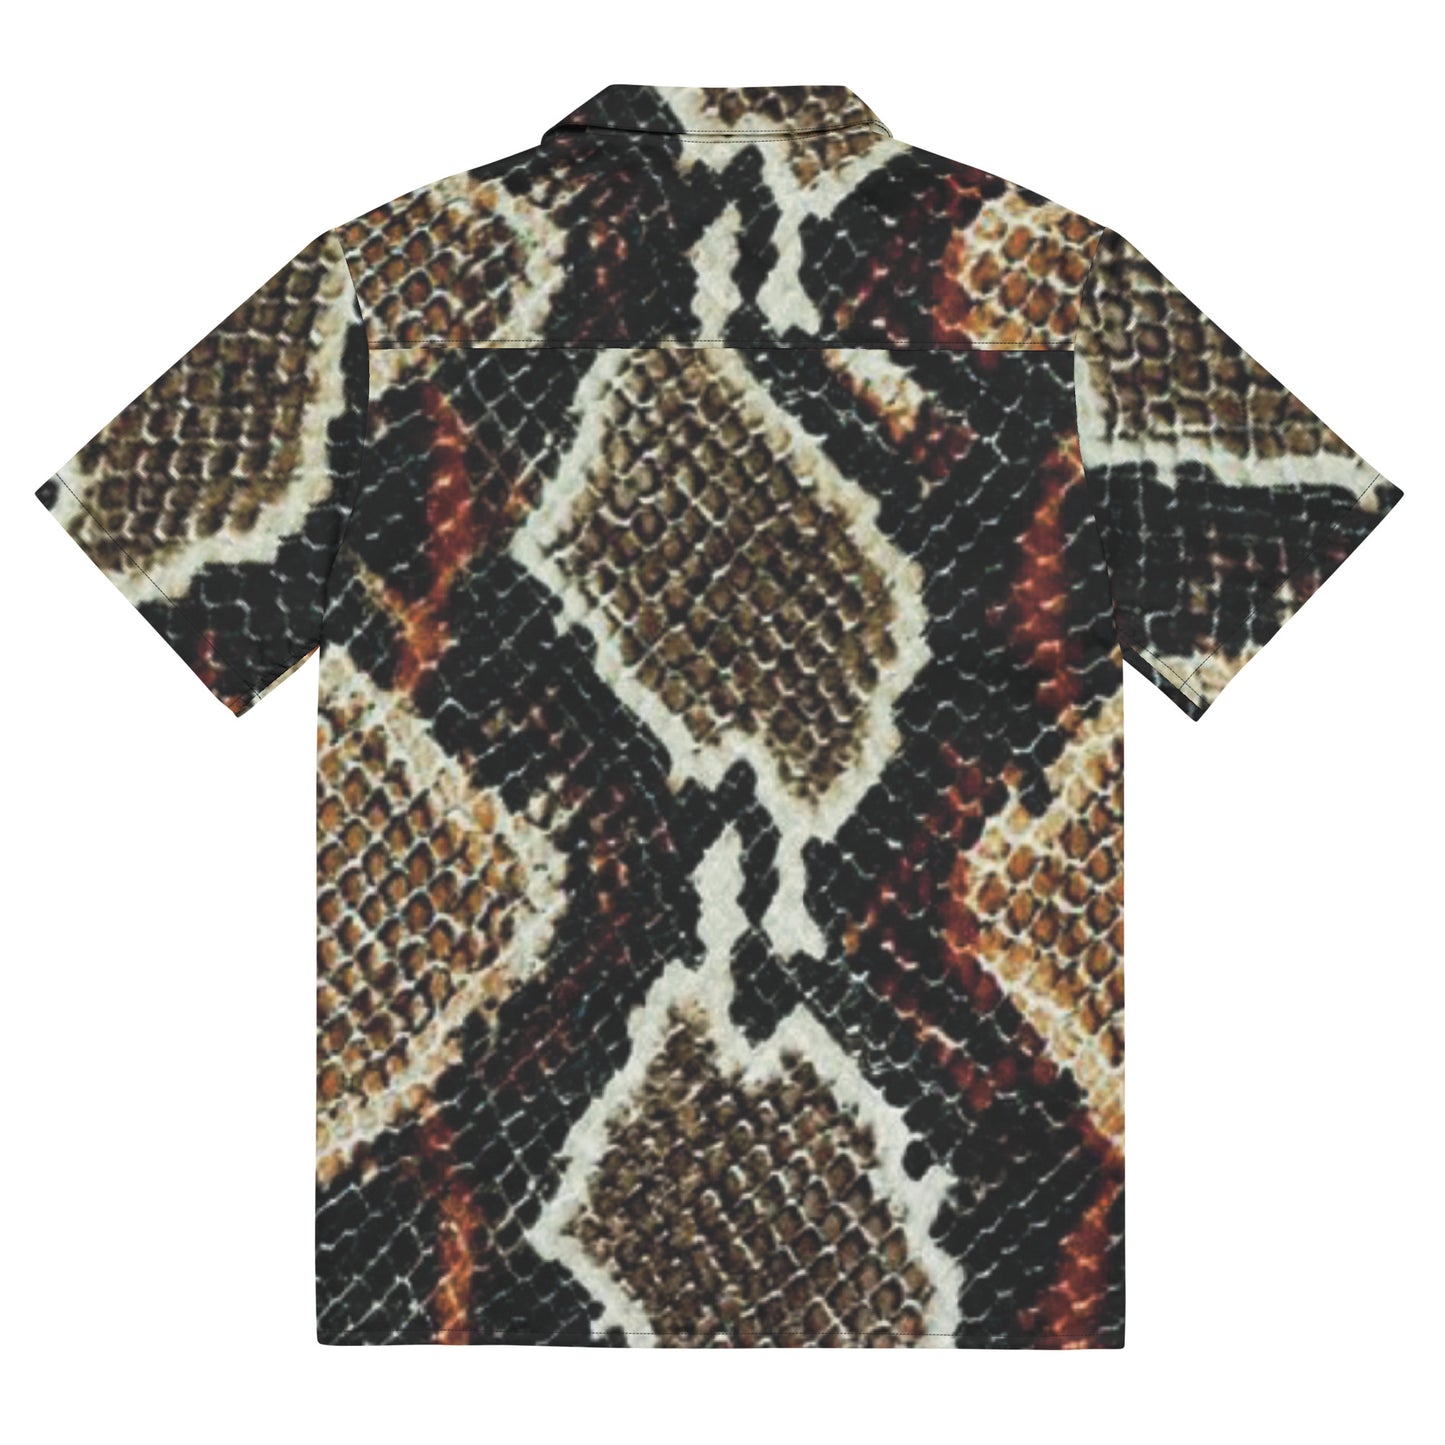 Sand Snake button shirt